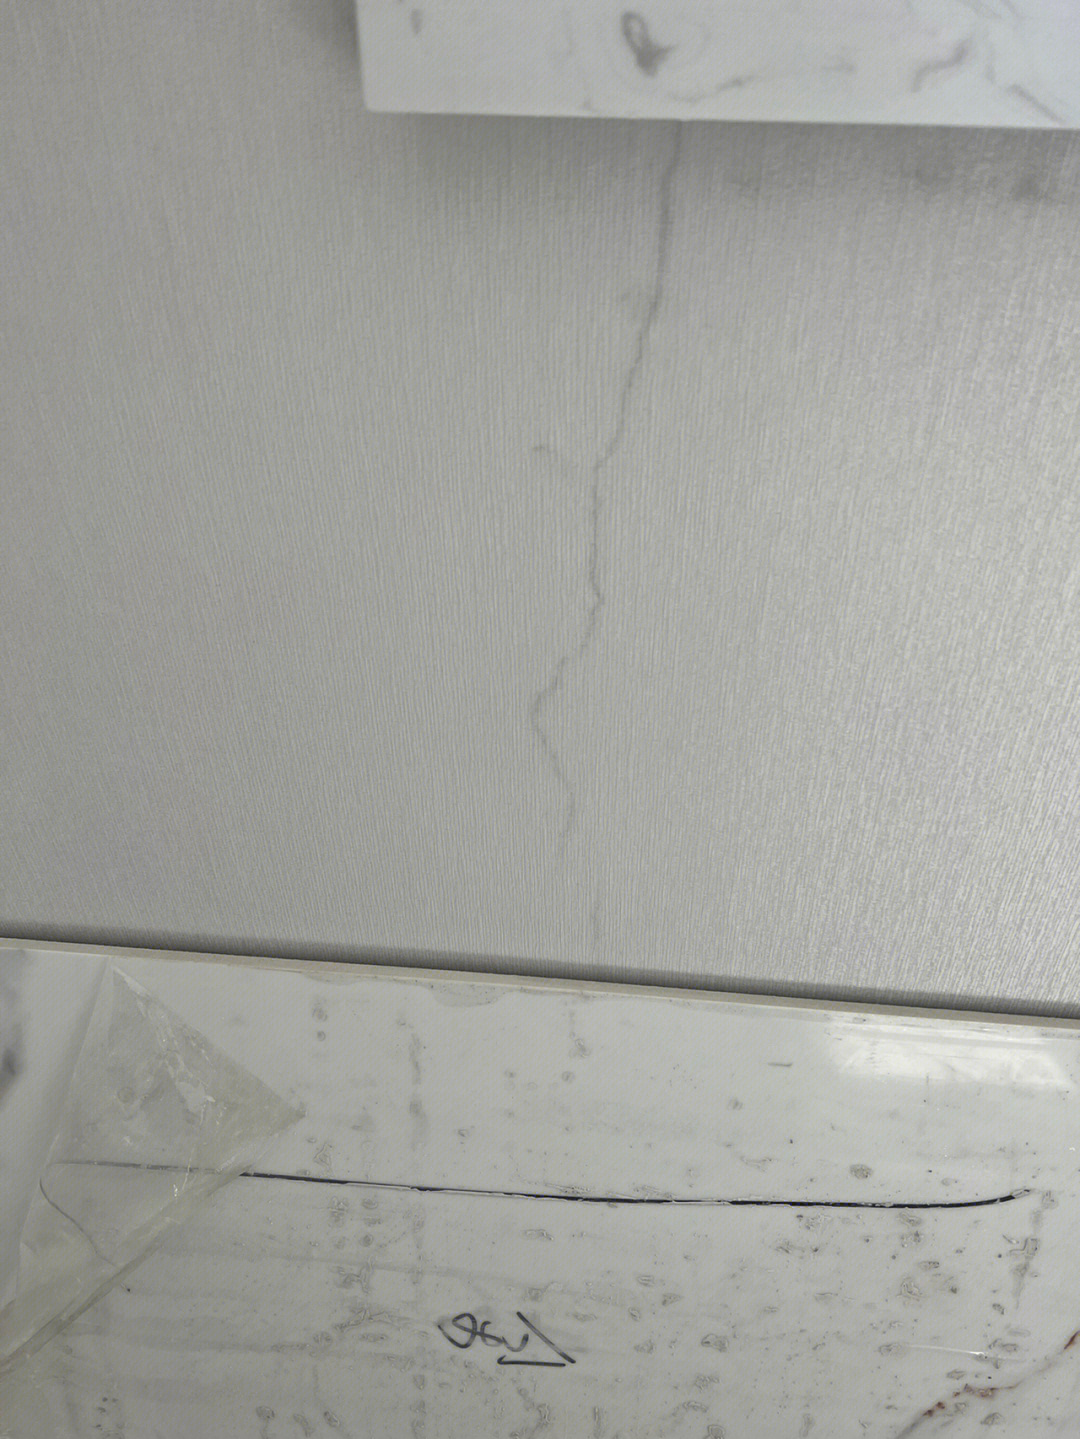 窗台下面墙体裂缝图片